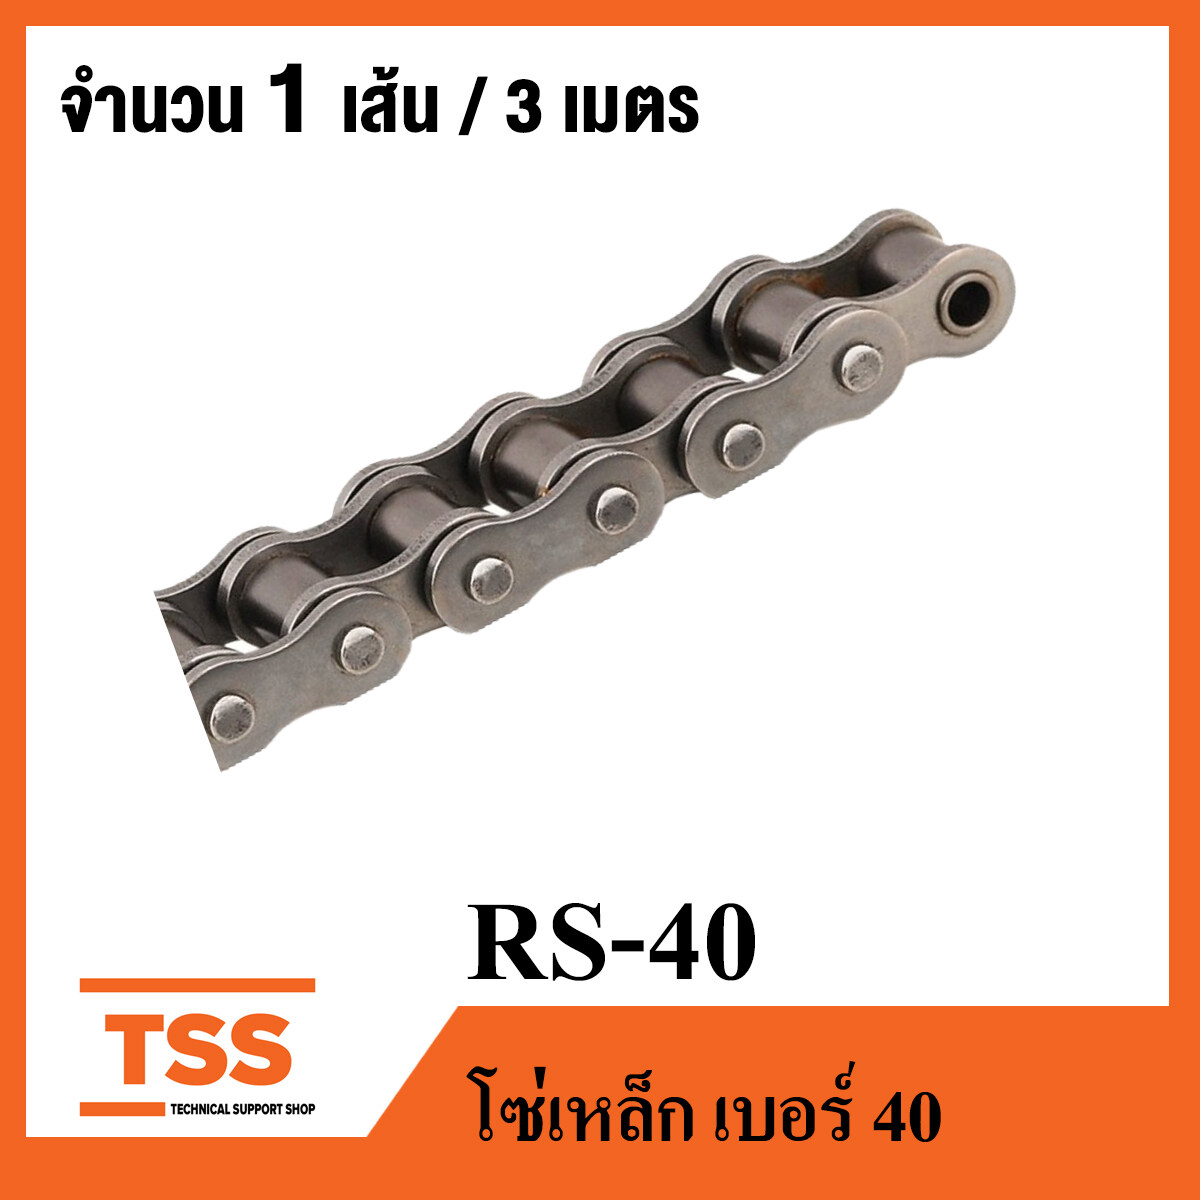 RS40 โซ่ส่งกำลัง เบอร์ 40 ( Transmission Roller chain ) ( 3 เมตร / 1 กล่อง ) โซ่อุตสาหกรรม เบอร์ 40 มีข้อต่อเต็มข้อ 1 ข้อ